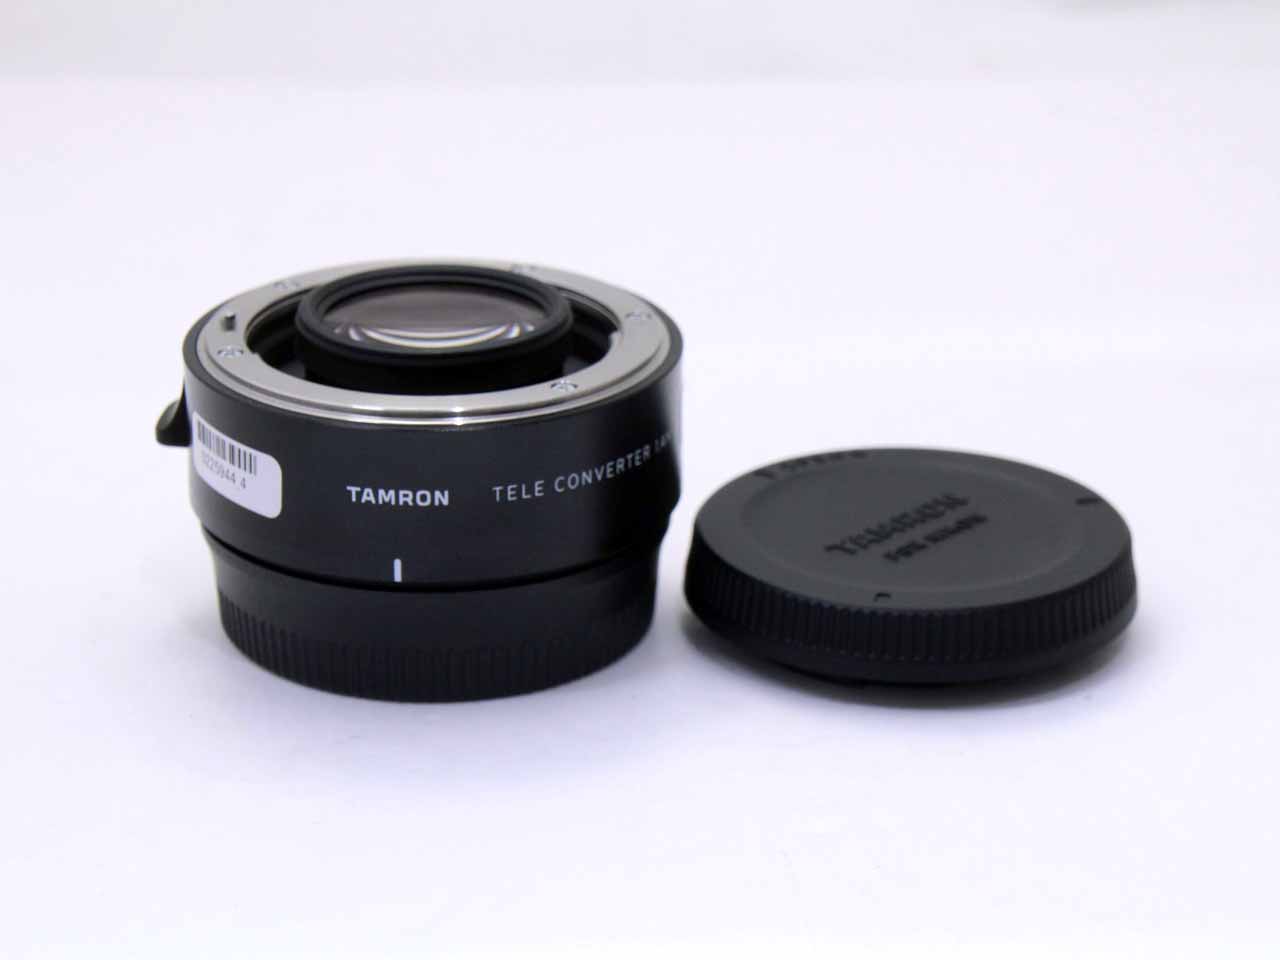 タムロン(tamron) TELE CONVERTER 1.4x (Model TC-X14) [ニコン用]